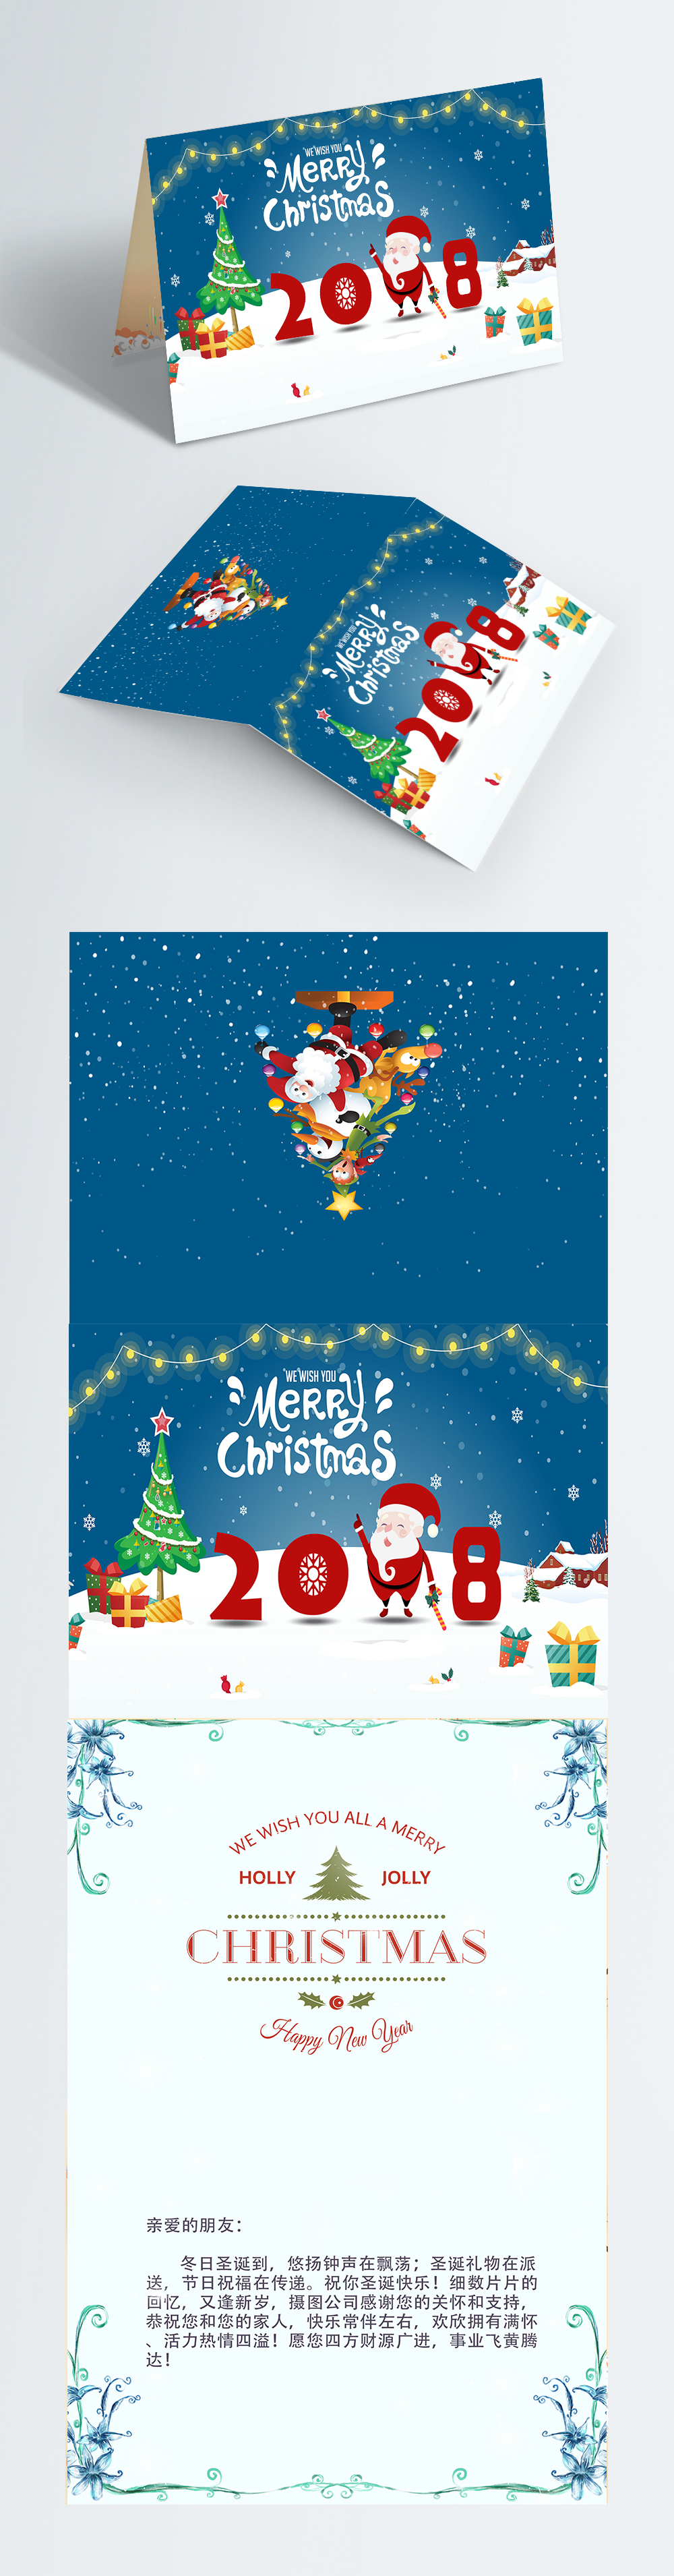 クリスマスのグリーティングカードテンプレートイメージ テンプレート Id Prf画像フォーマットpsd Jp Lovepik Com